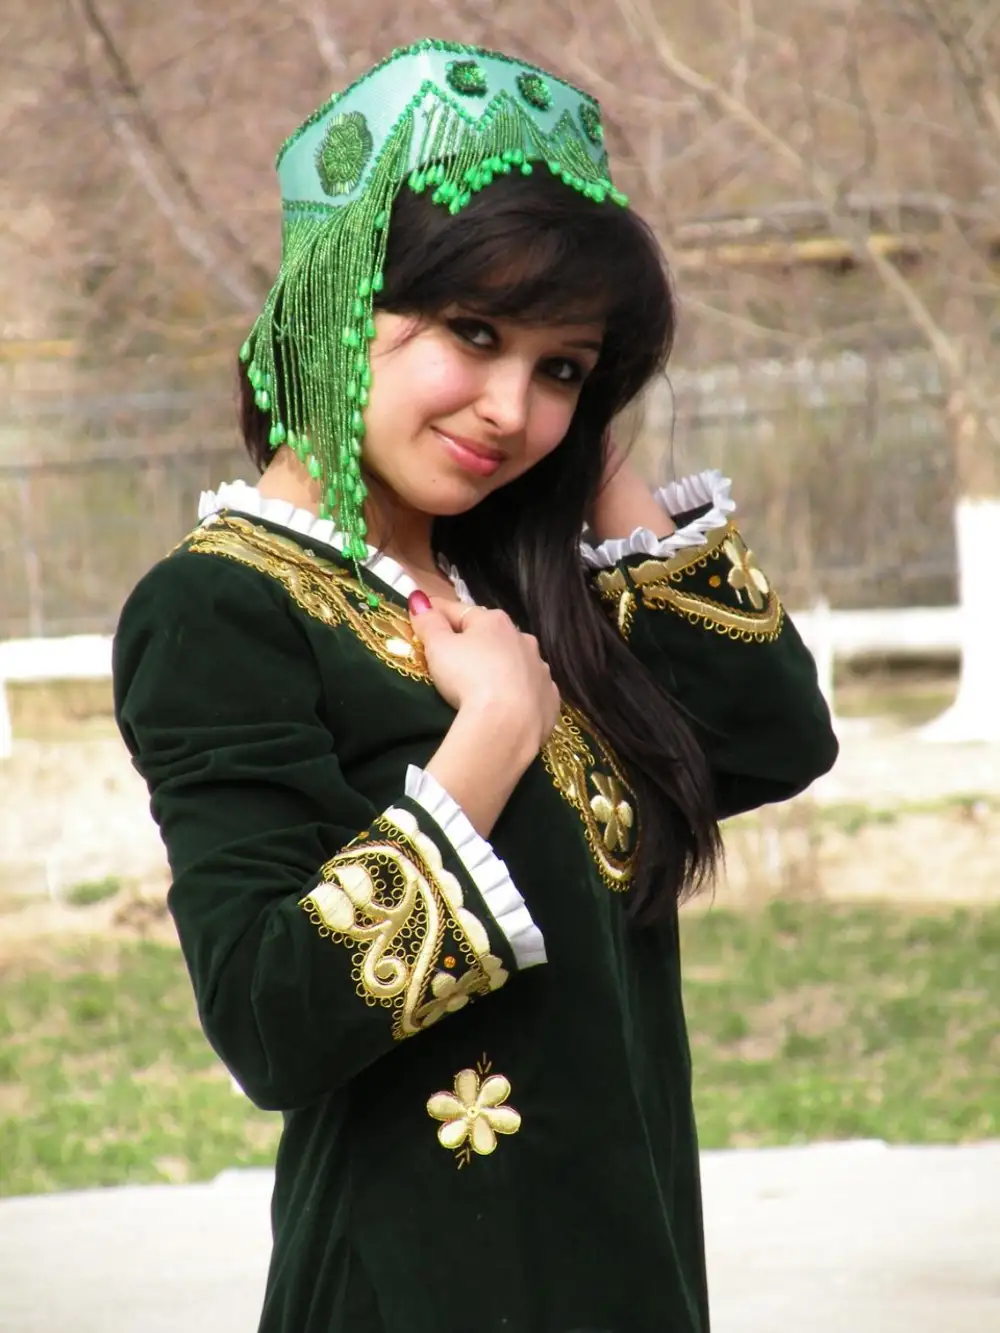 Йиғлаган қизлар 70. Киргиз гузаллар. Узбекские женщины. Таджикские девушки. Узбек кизлари.